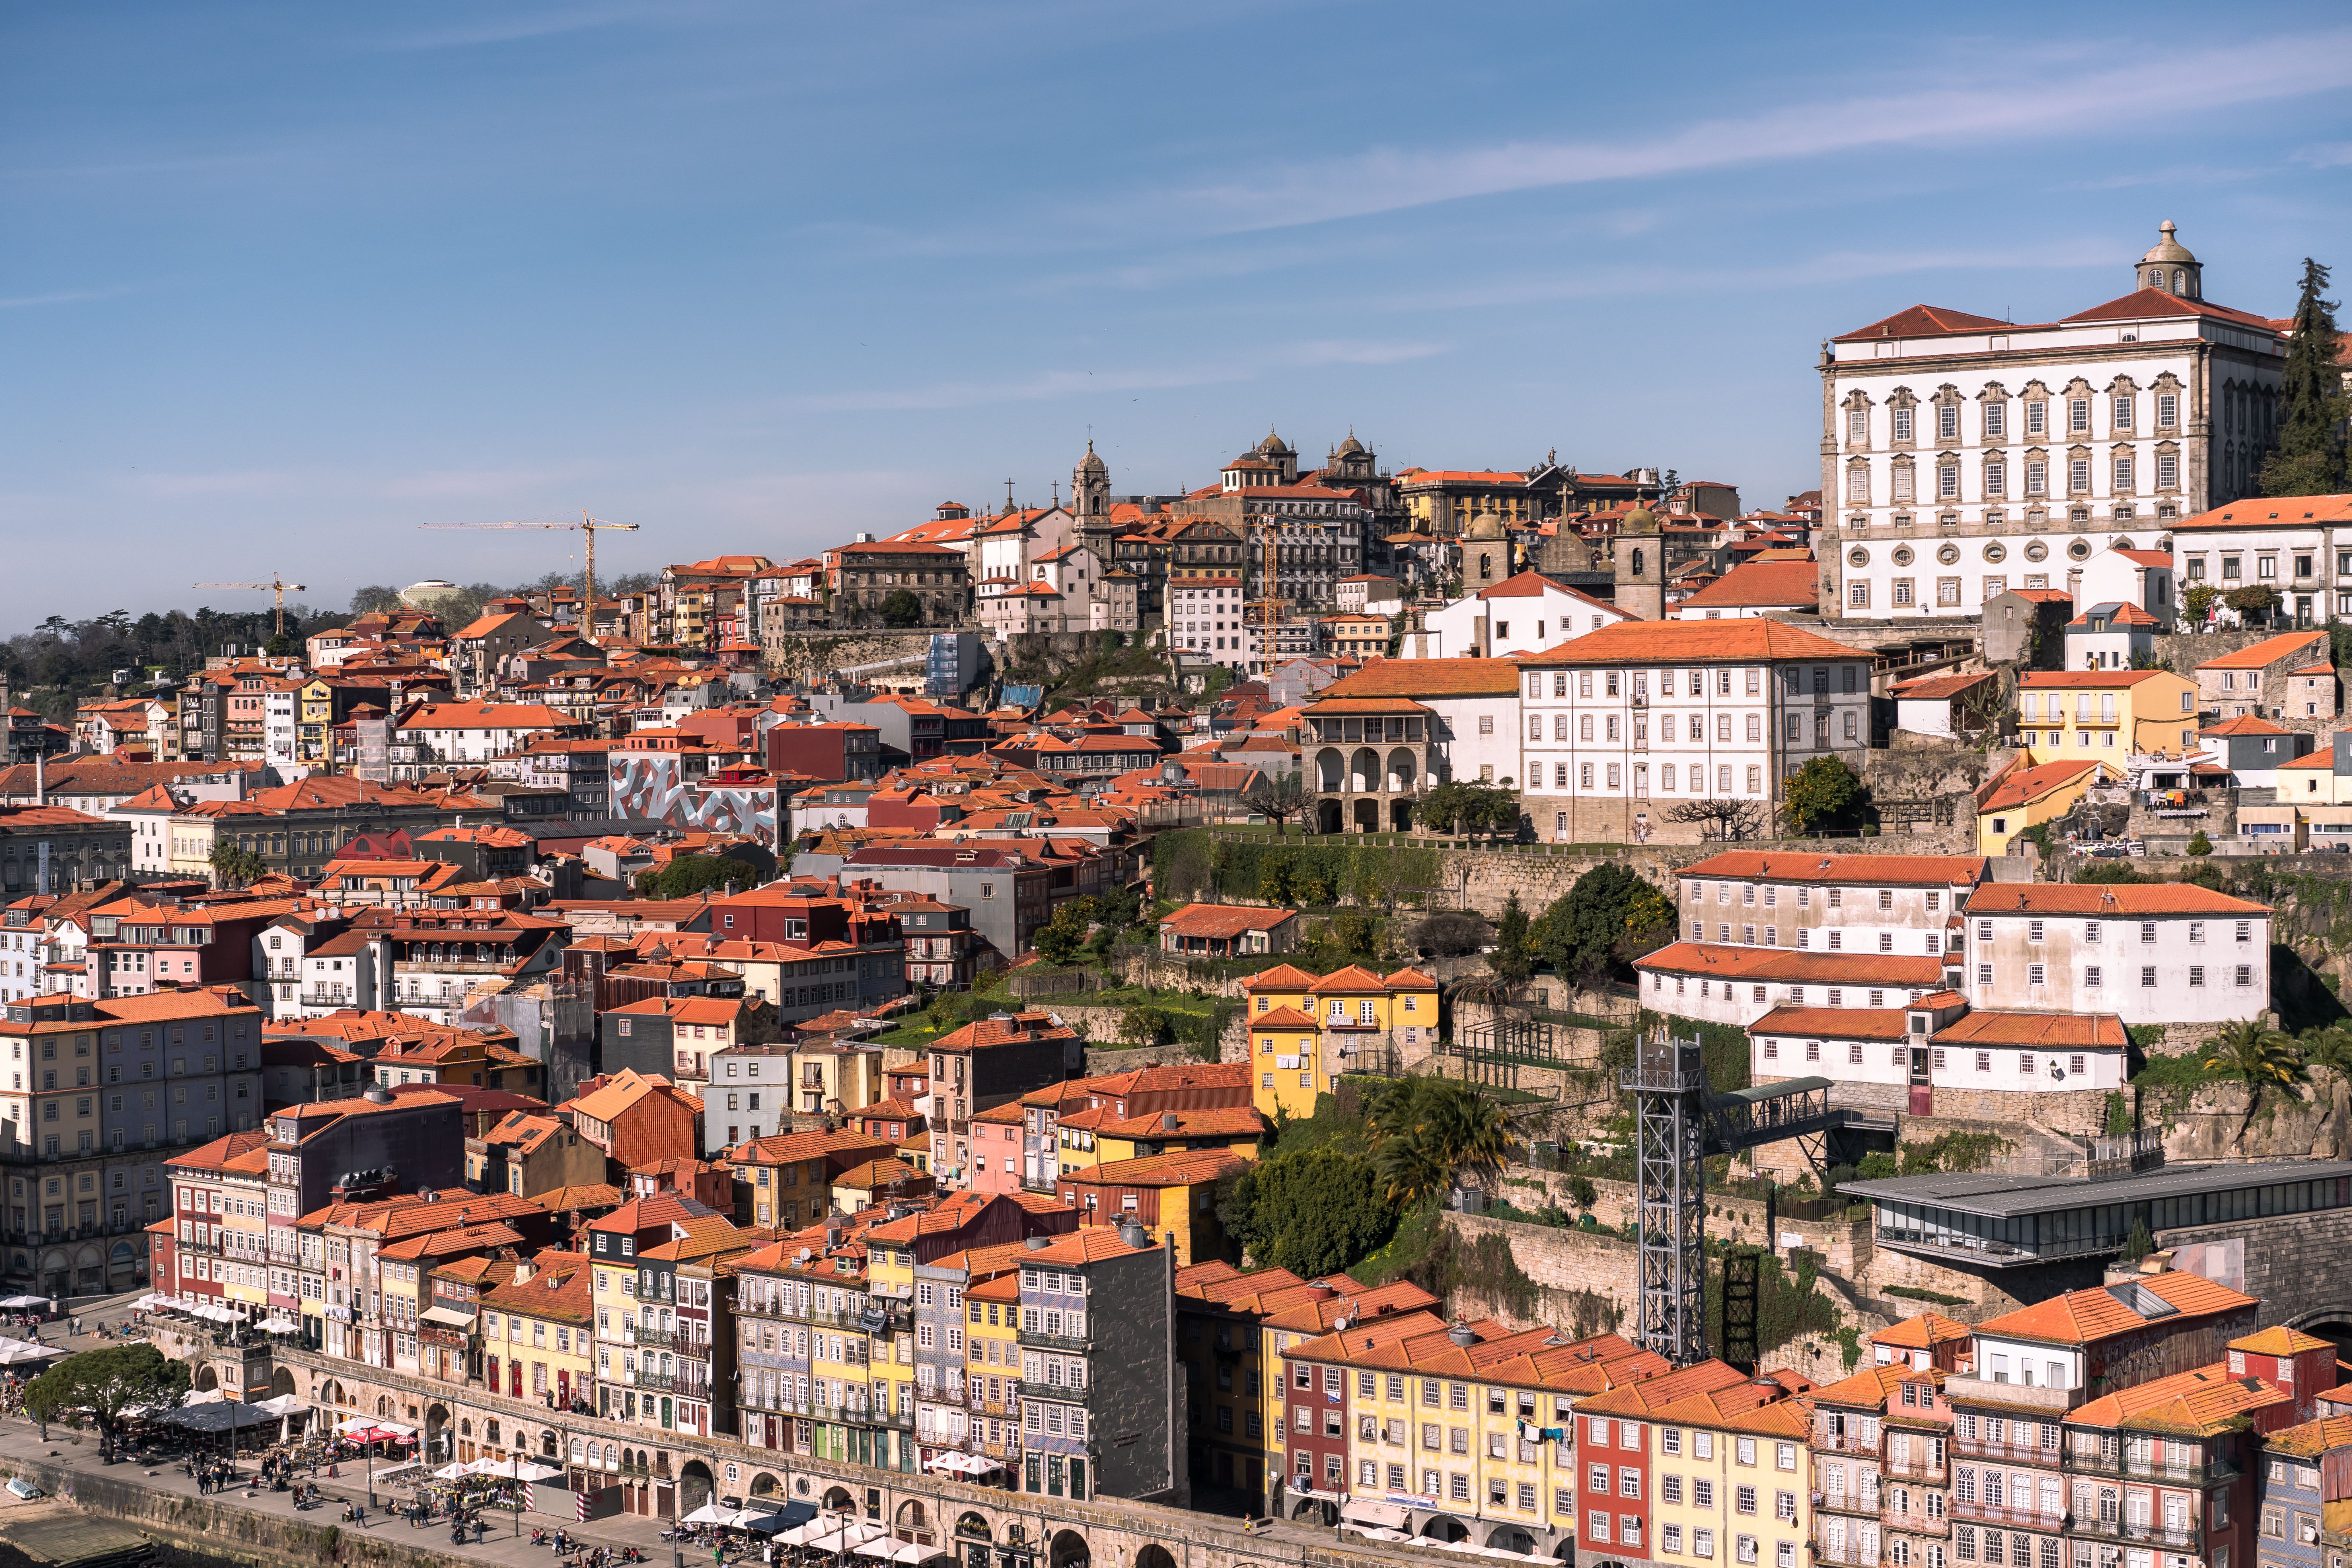 CEATE organiza un viaje a Oporto del 25 al 28 de octubre